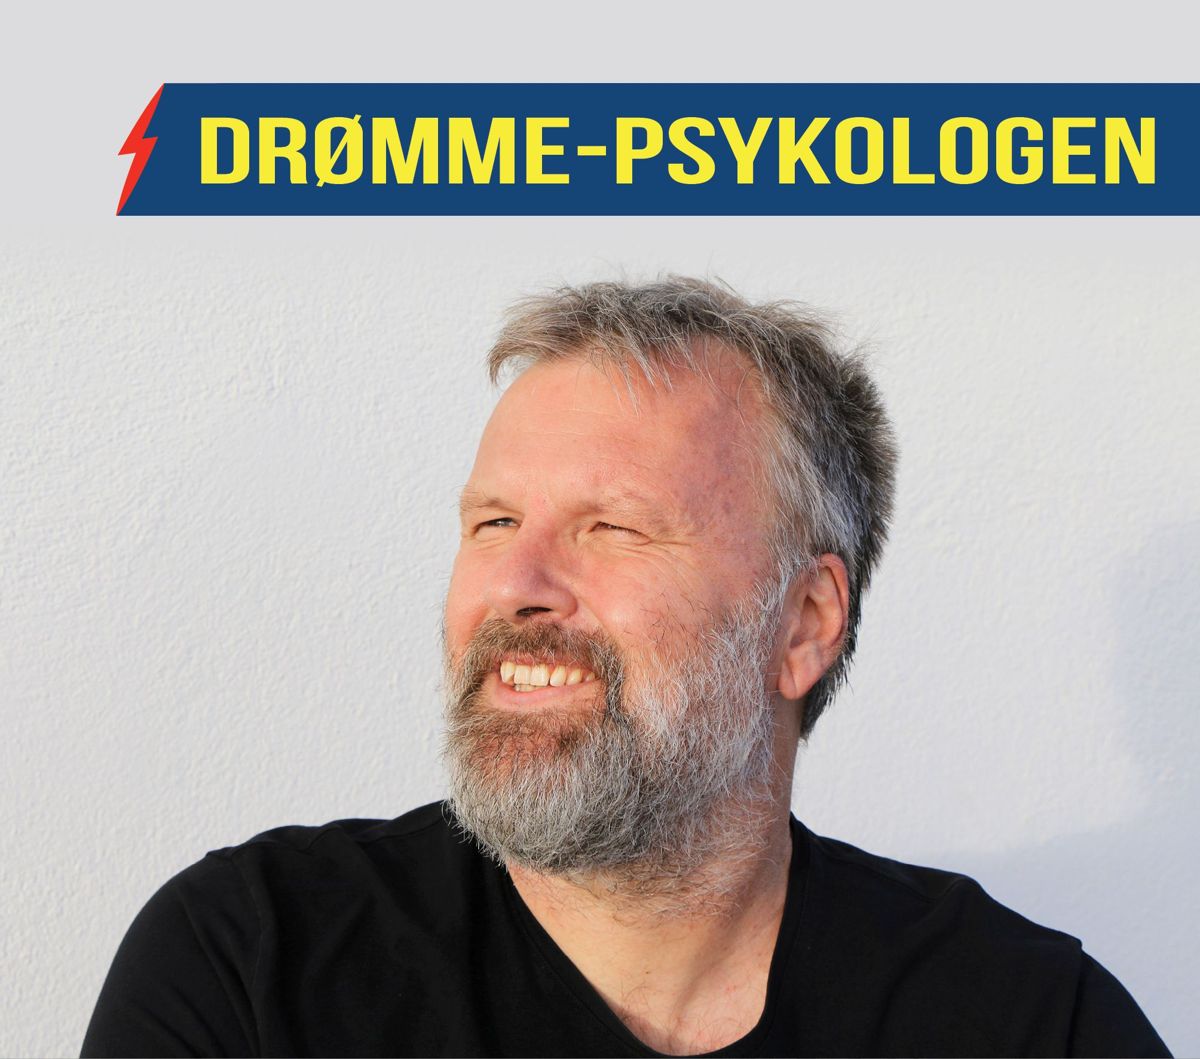 Psykolog og drømmetyder Gert Barslund hjælper dig med at forstå dine drømme.